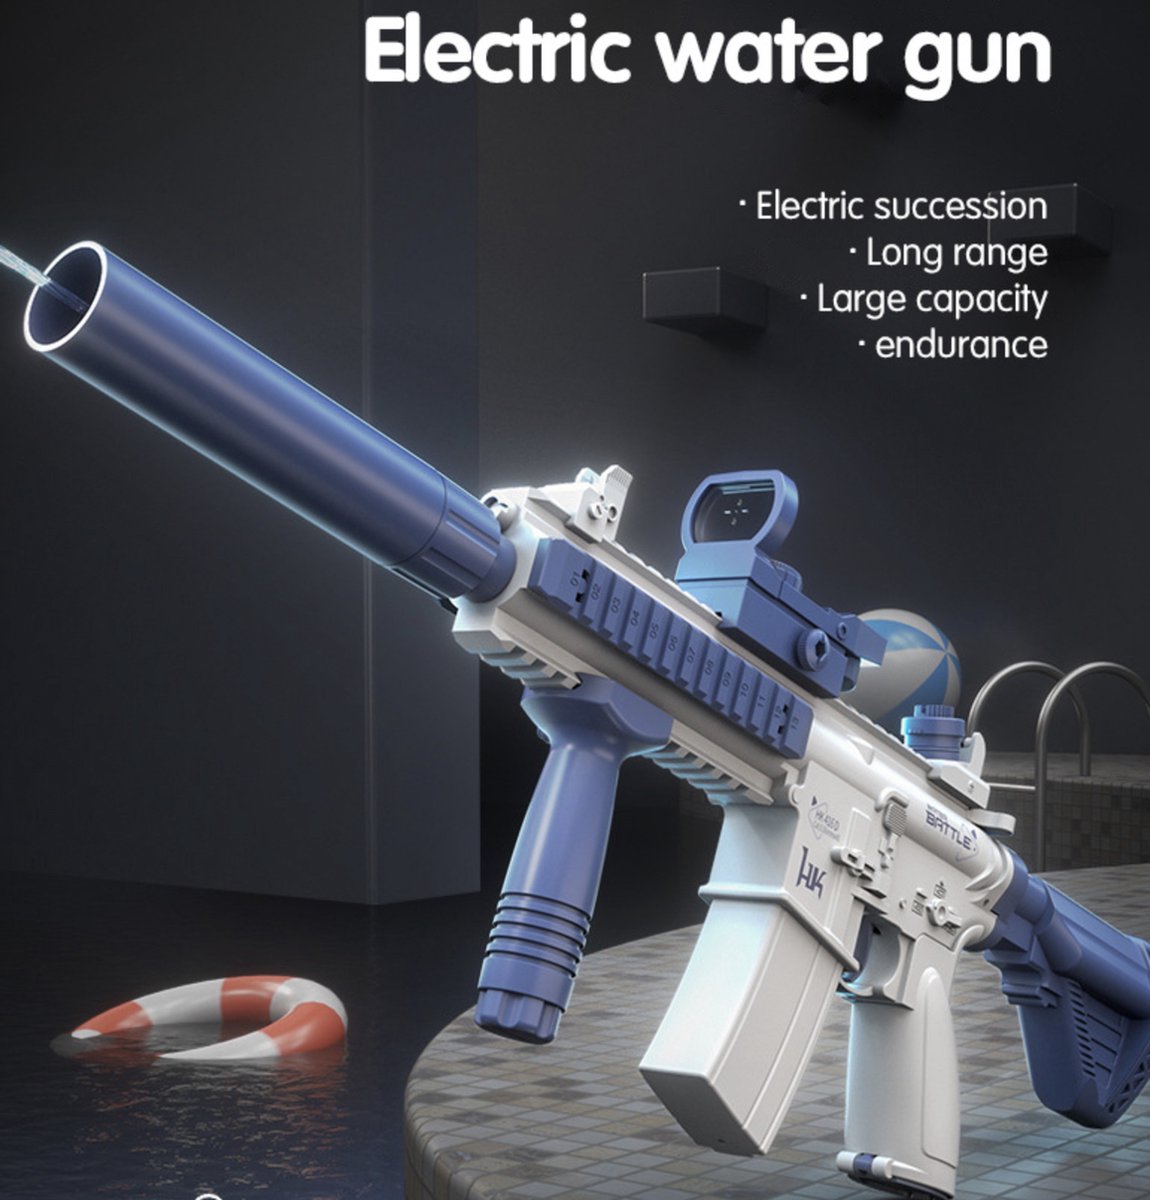 M416 Volautomatisch elektrisch waterpistool - Blauw - lange afstand afvuren- watergun - buitenspeelgoed - zomerspelletjes - verkoeling - elektrisch